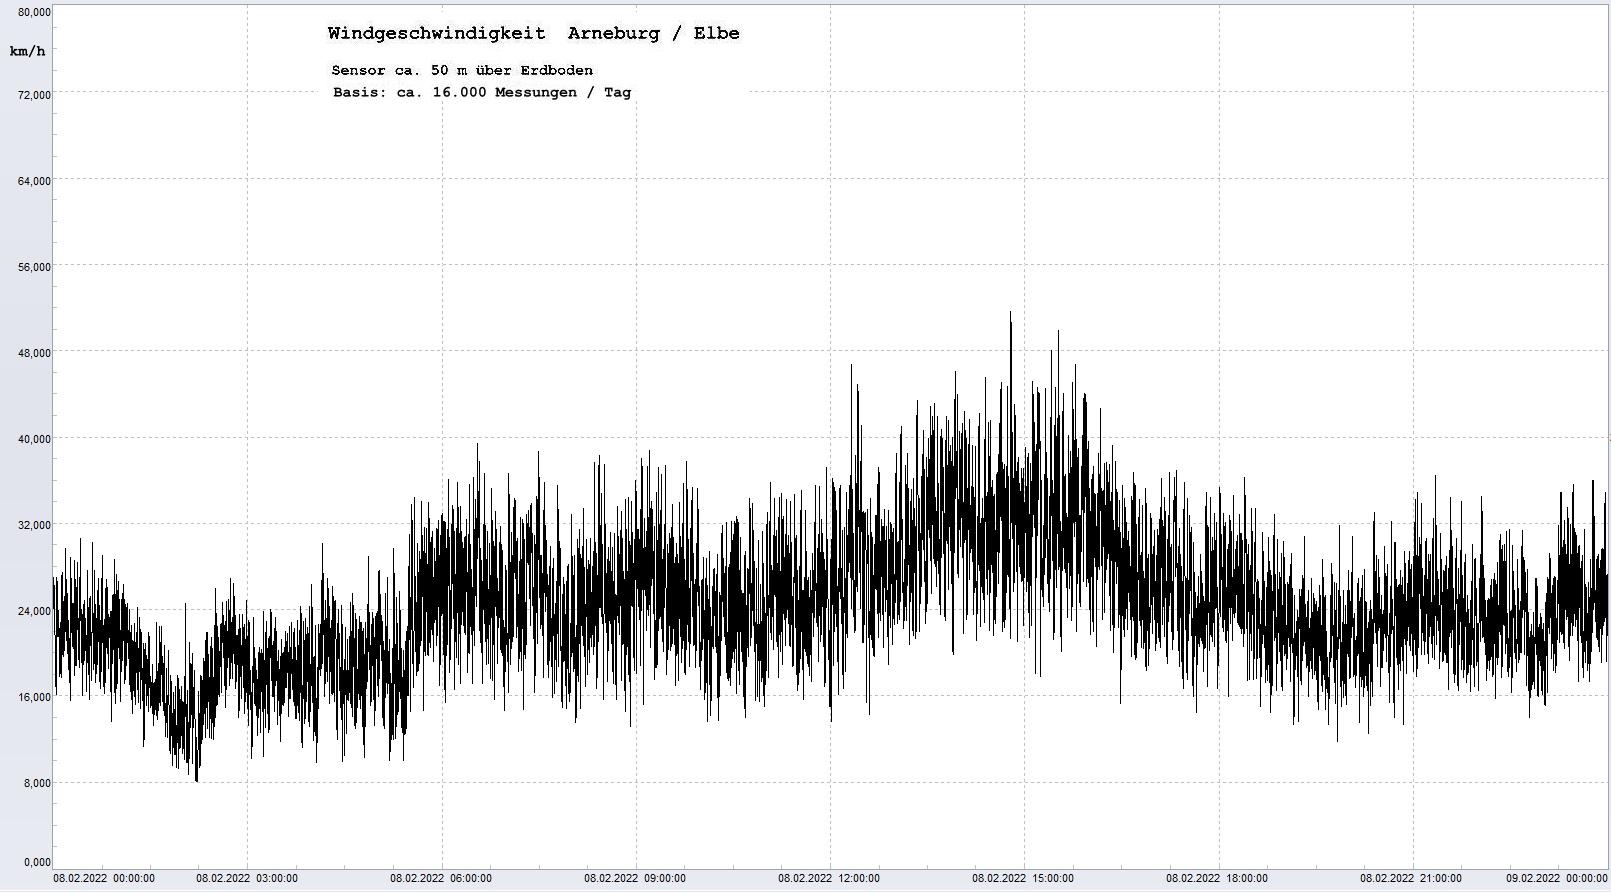 Arneburg Tages-Diagramm Winddaten, 08.02.2022
  Diagramm, Sensor auf Gebude, ca. 50 m ber Erdboden, Basis: 5s-Aufzeichnung